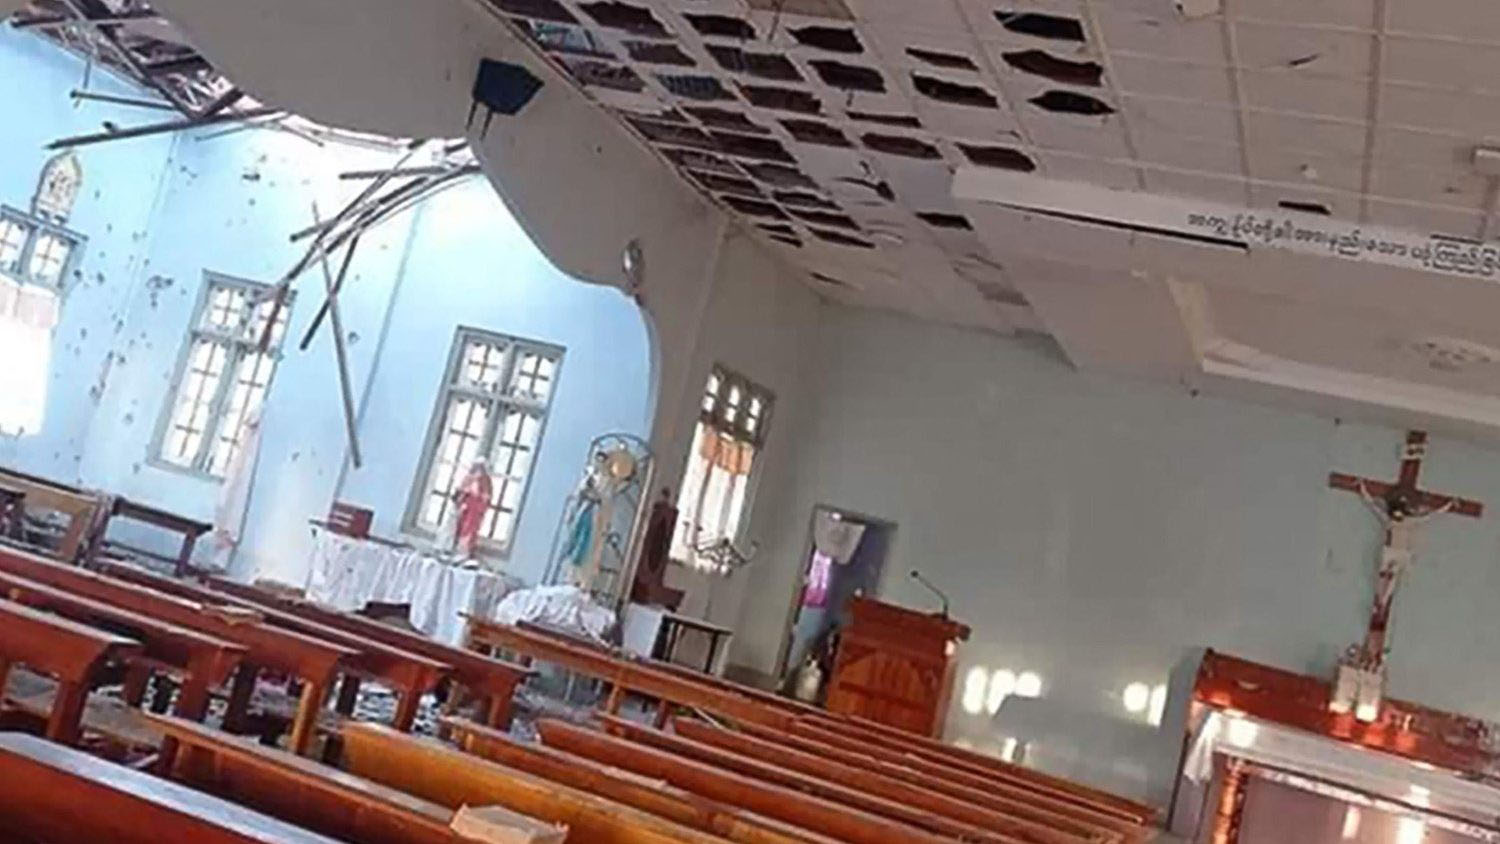 Les bombardements ont touché des édifices religieux comme ici l'église de Kayan Tharyar, frappée par des tirs de mortier, le 25 mai | © Vatican News